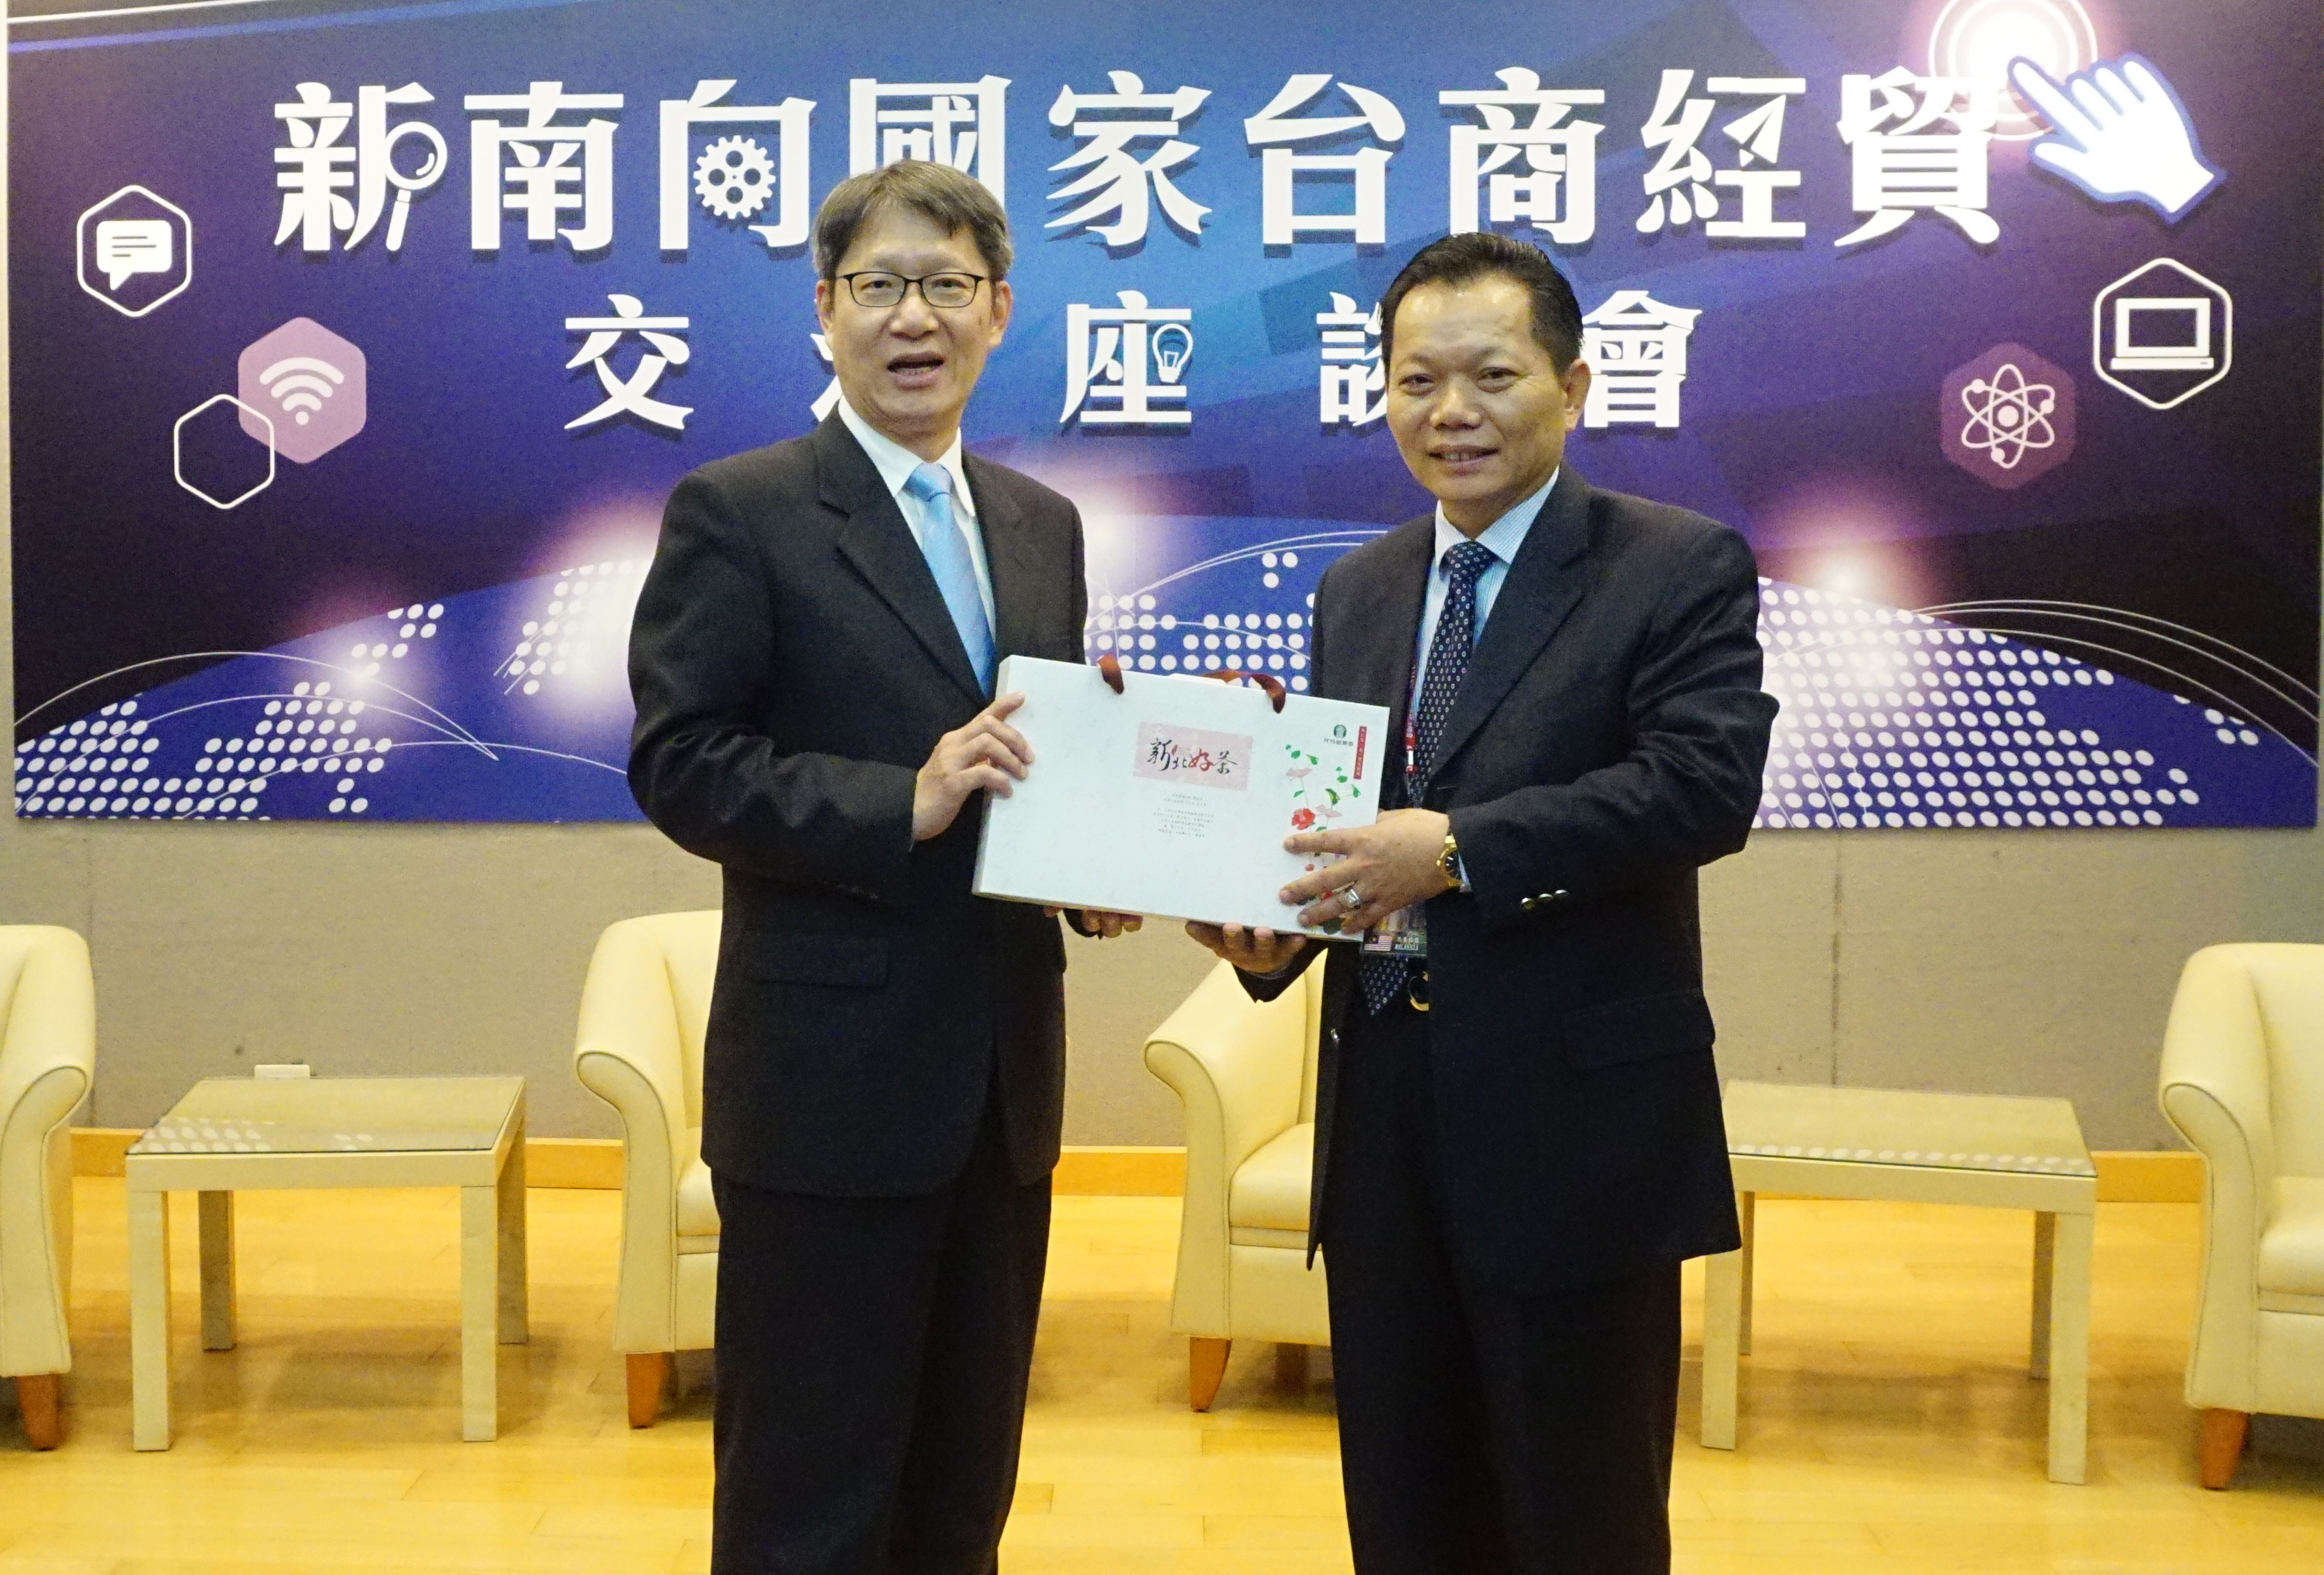 新北市副市長葉惠青(左)與亞洲台灣商會聯合總會長江文洲(右)互相致贈禮品